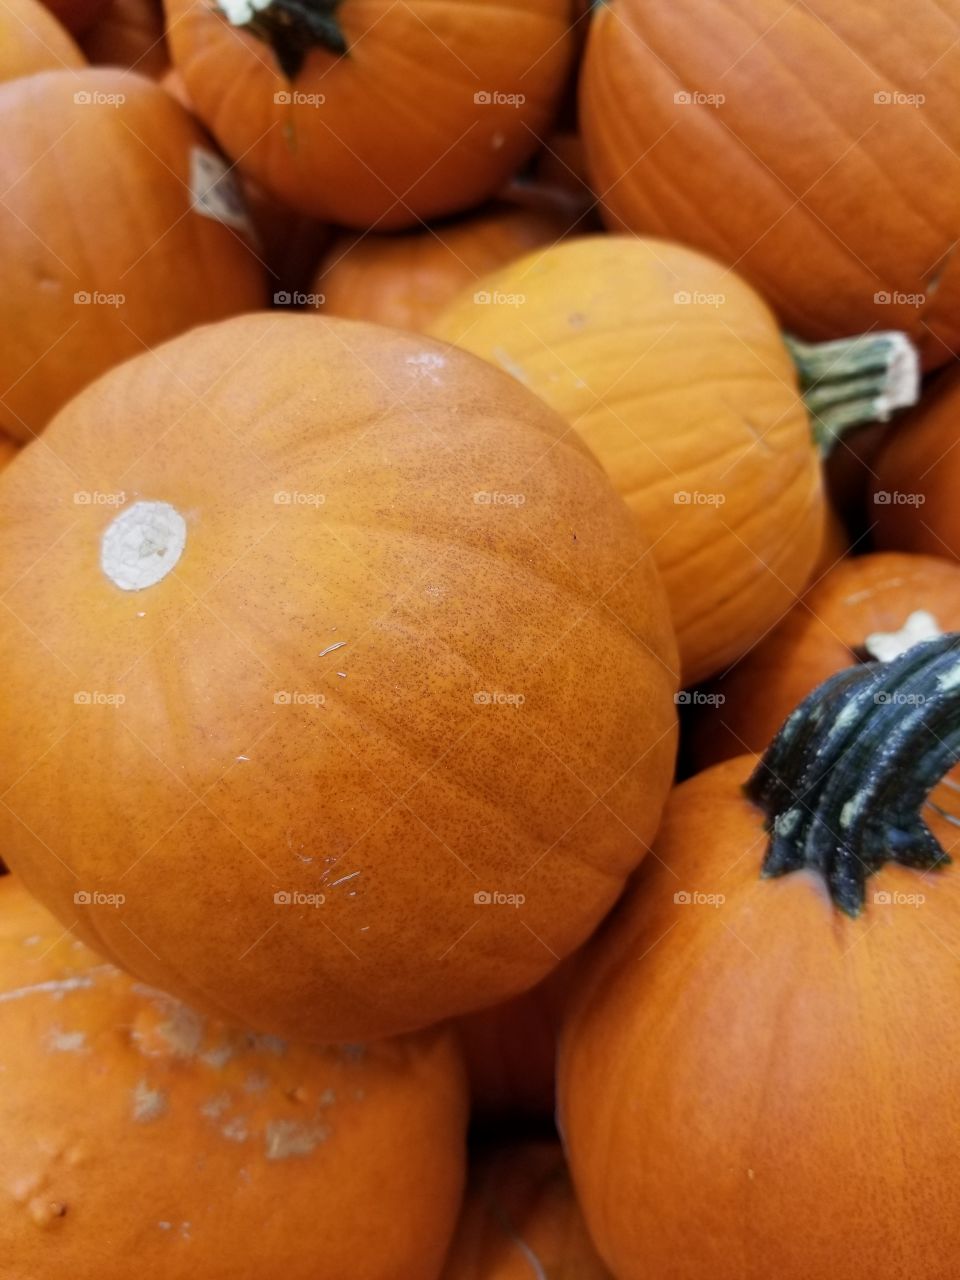 pumpkins!